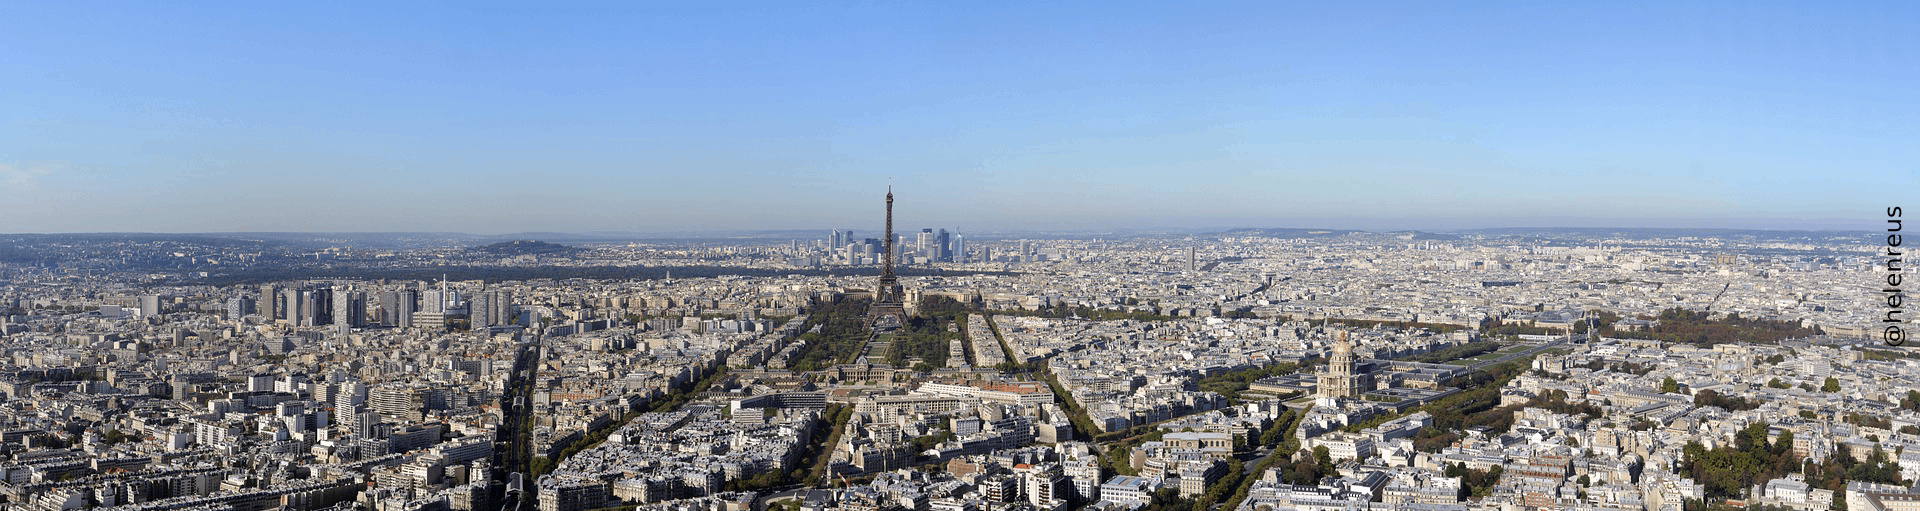 WMNC 2019 - Paris